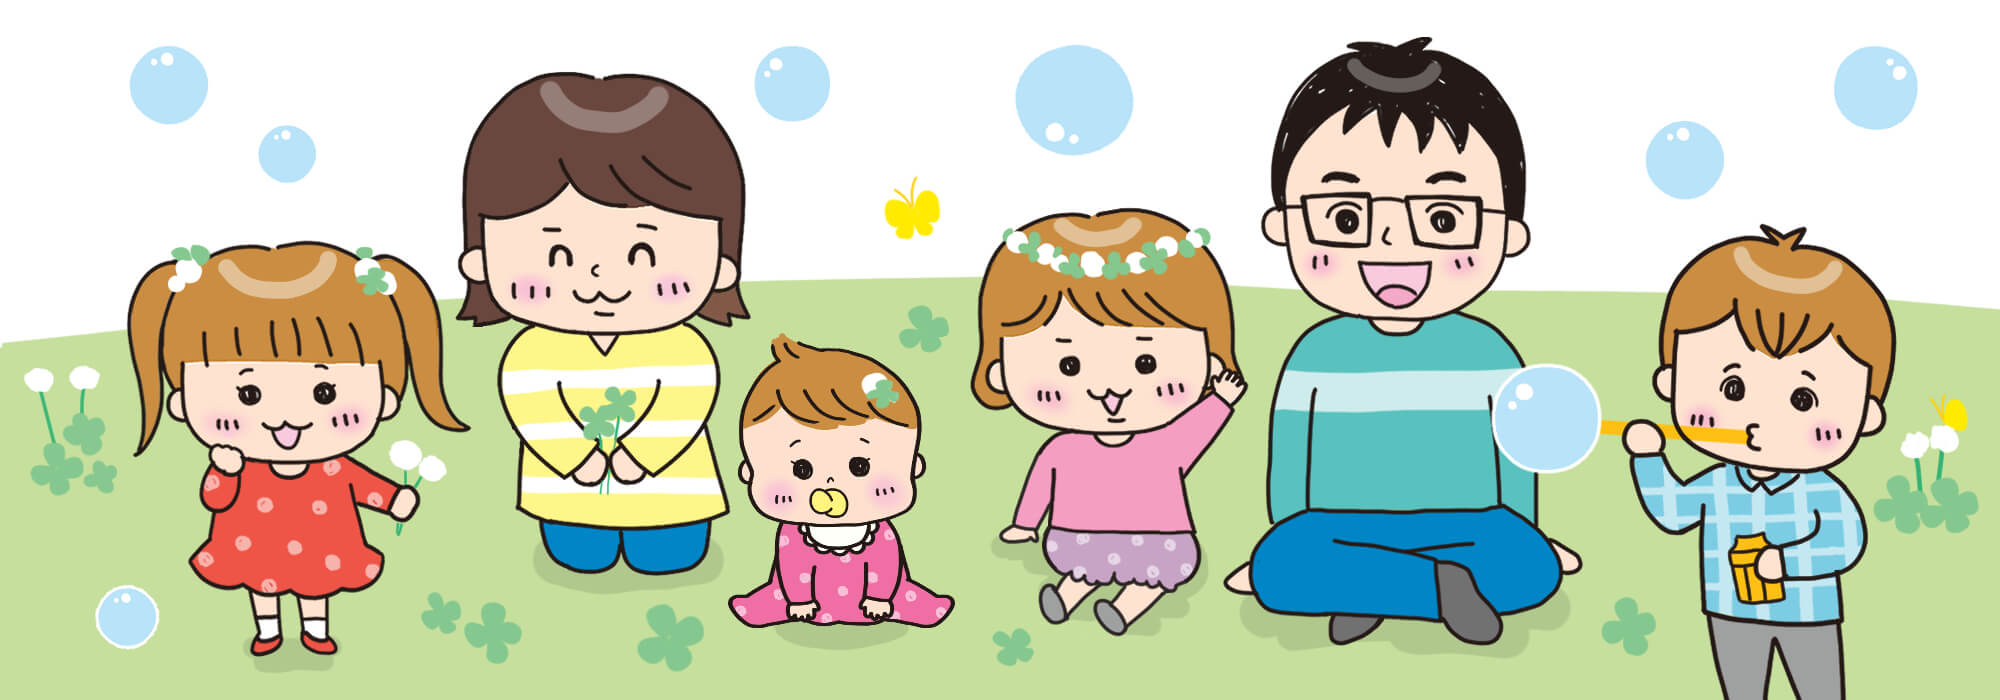 クローバー畑で遊ぶ家族のイラスト